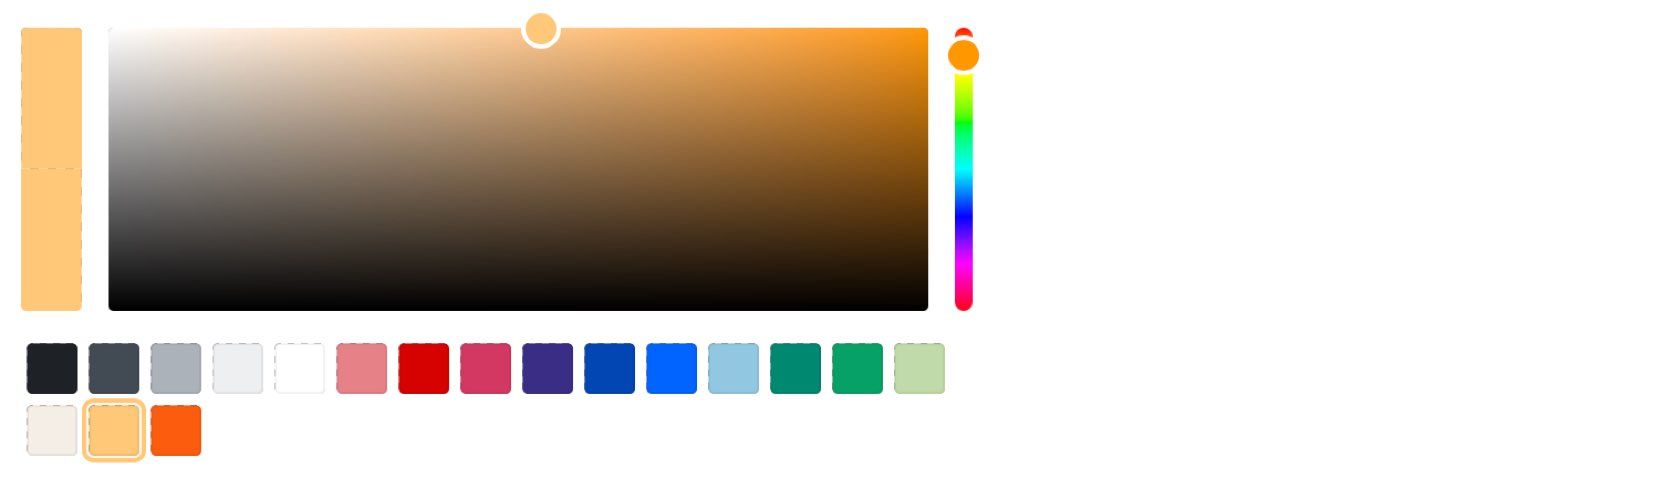 Colour picker with default colour palette